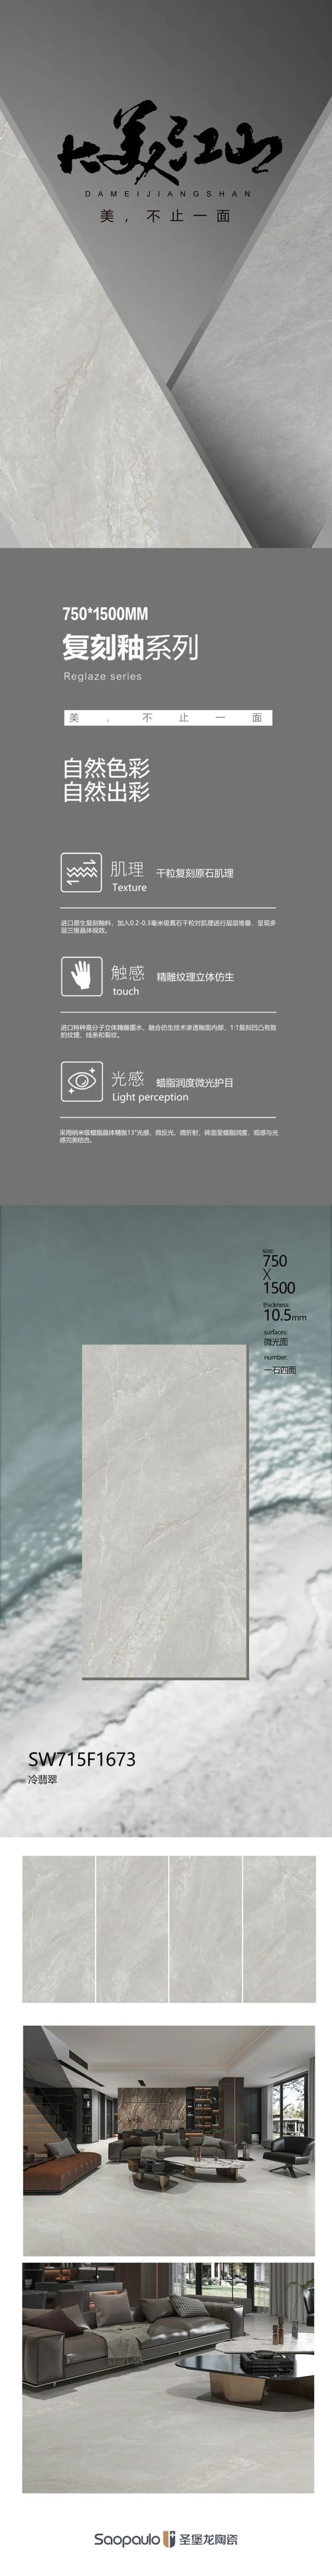 圣堡龙陶瓷「大美江山复刻釉」SW715F1673 冷翡翠，高